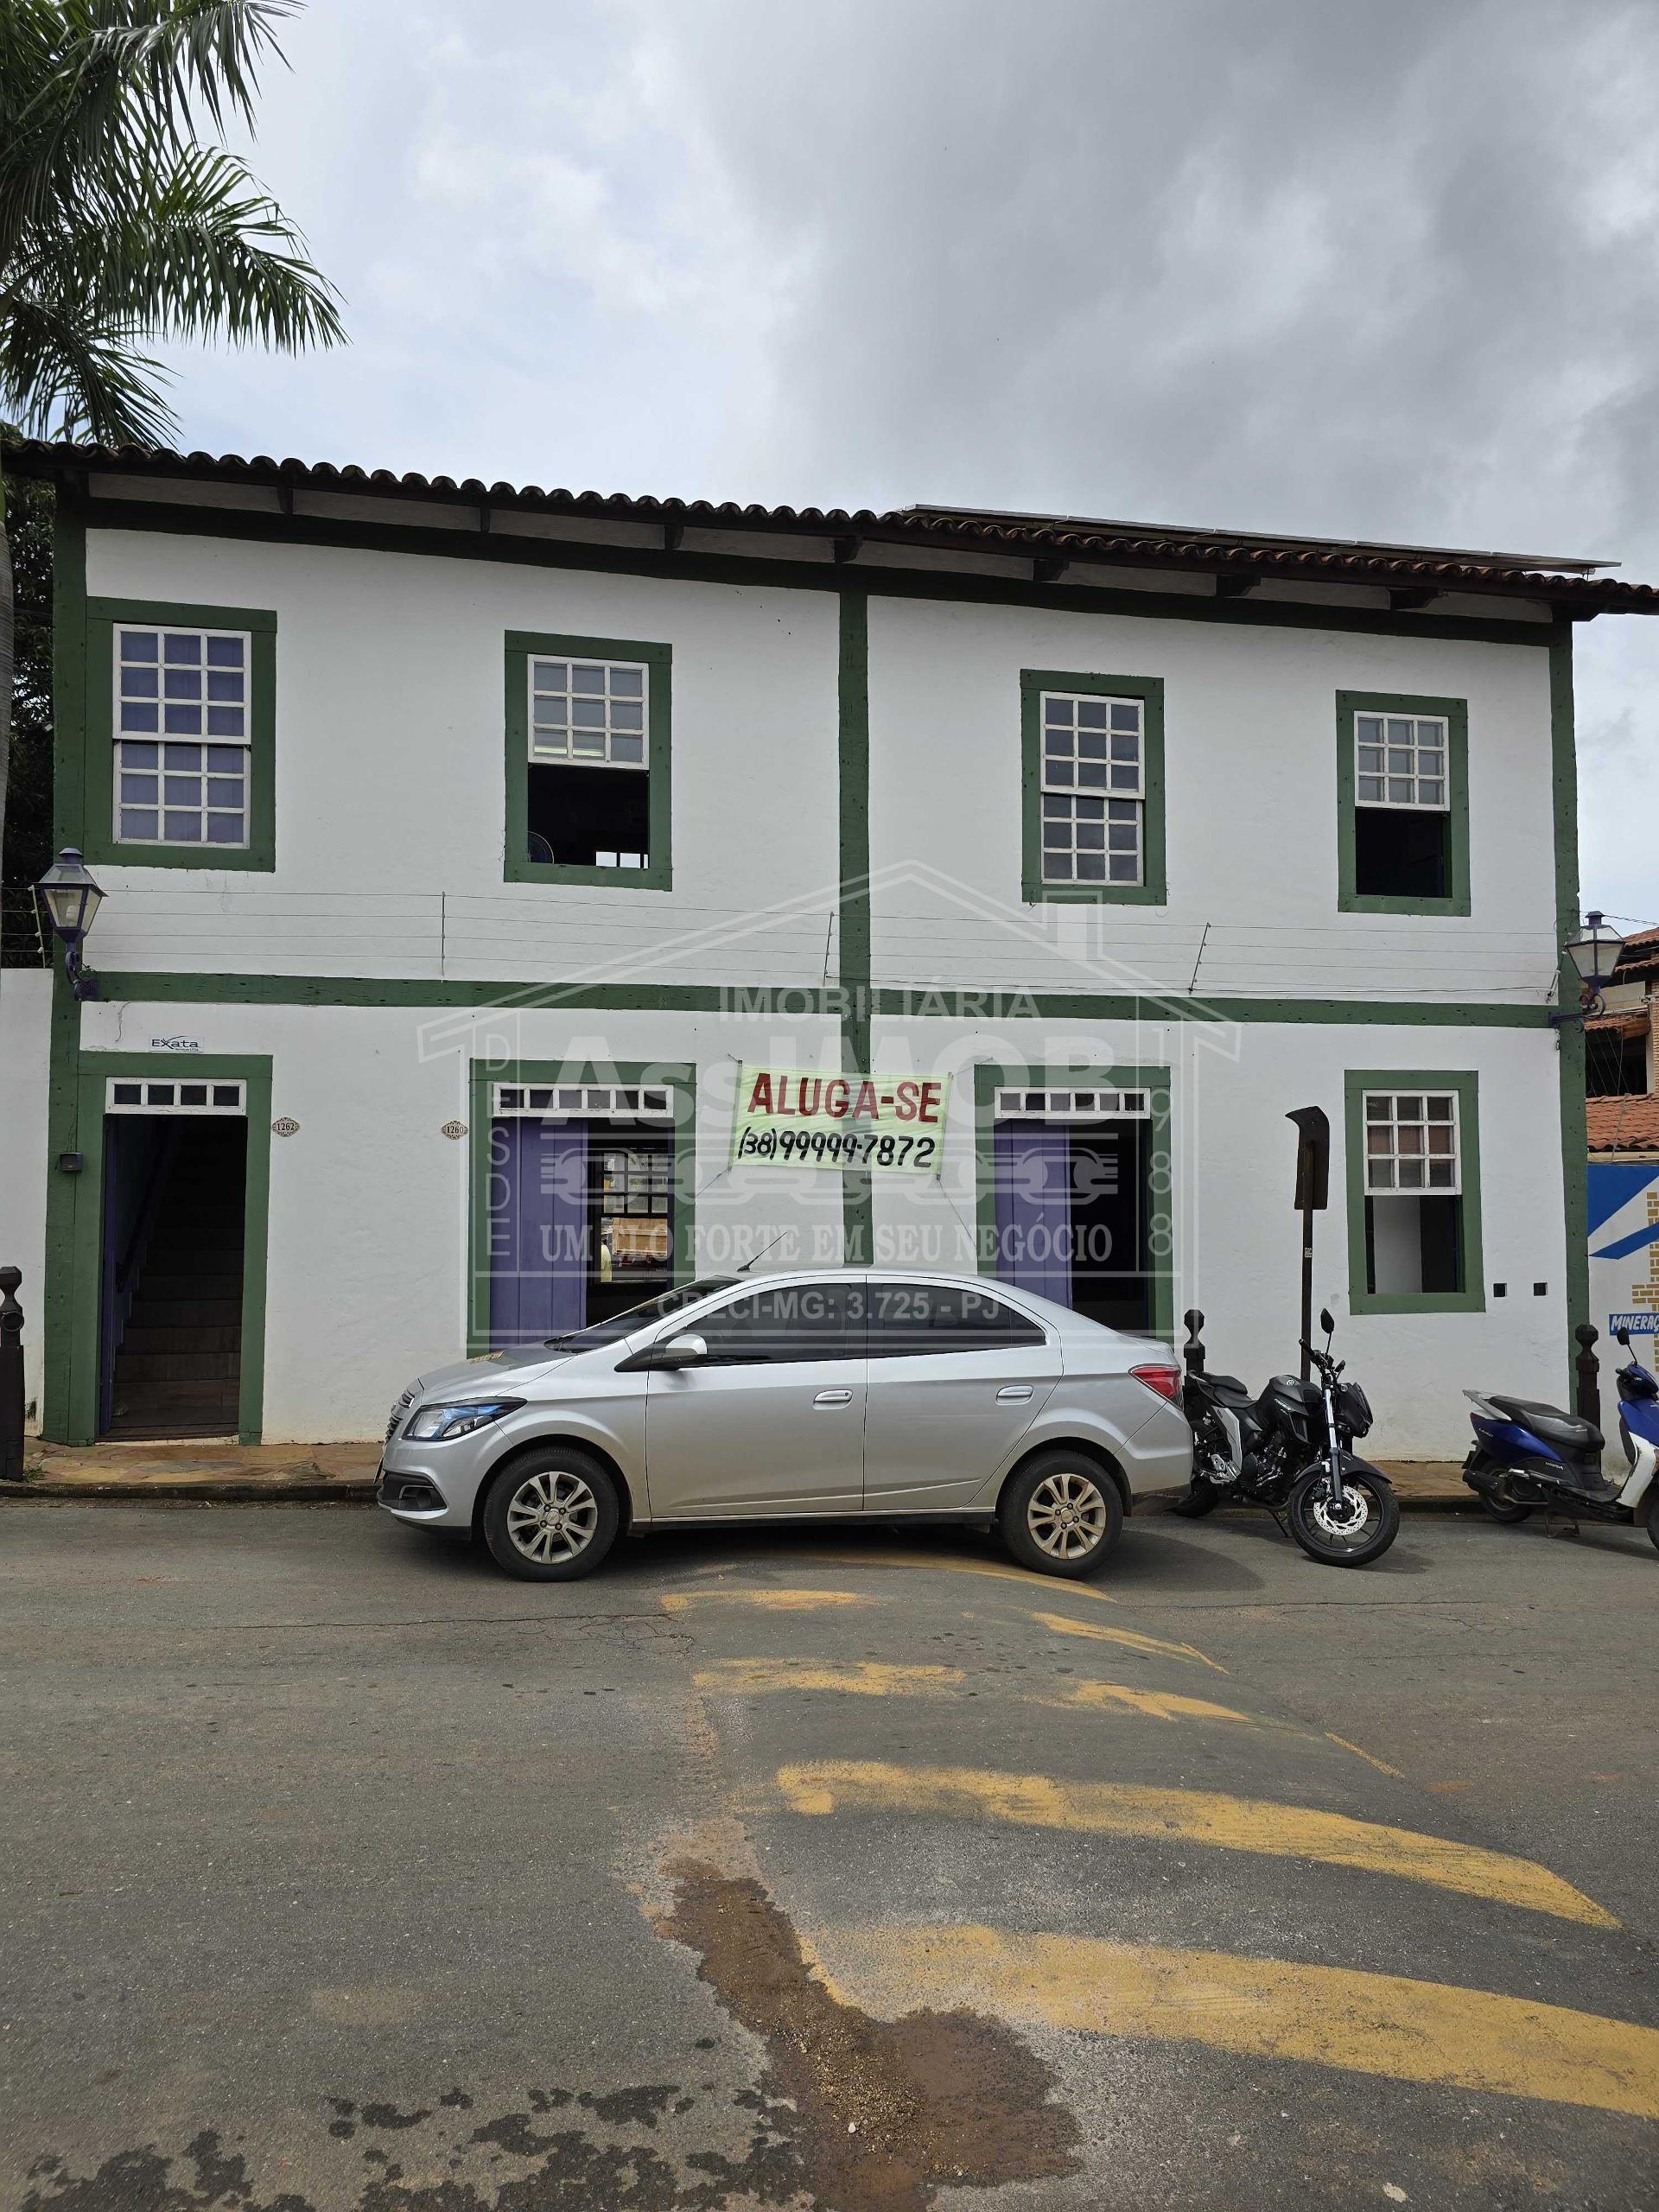 Loja comercial, Centro Paracatu-MG - Rua Rio Grande do Sul, 1260.